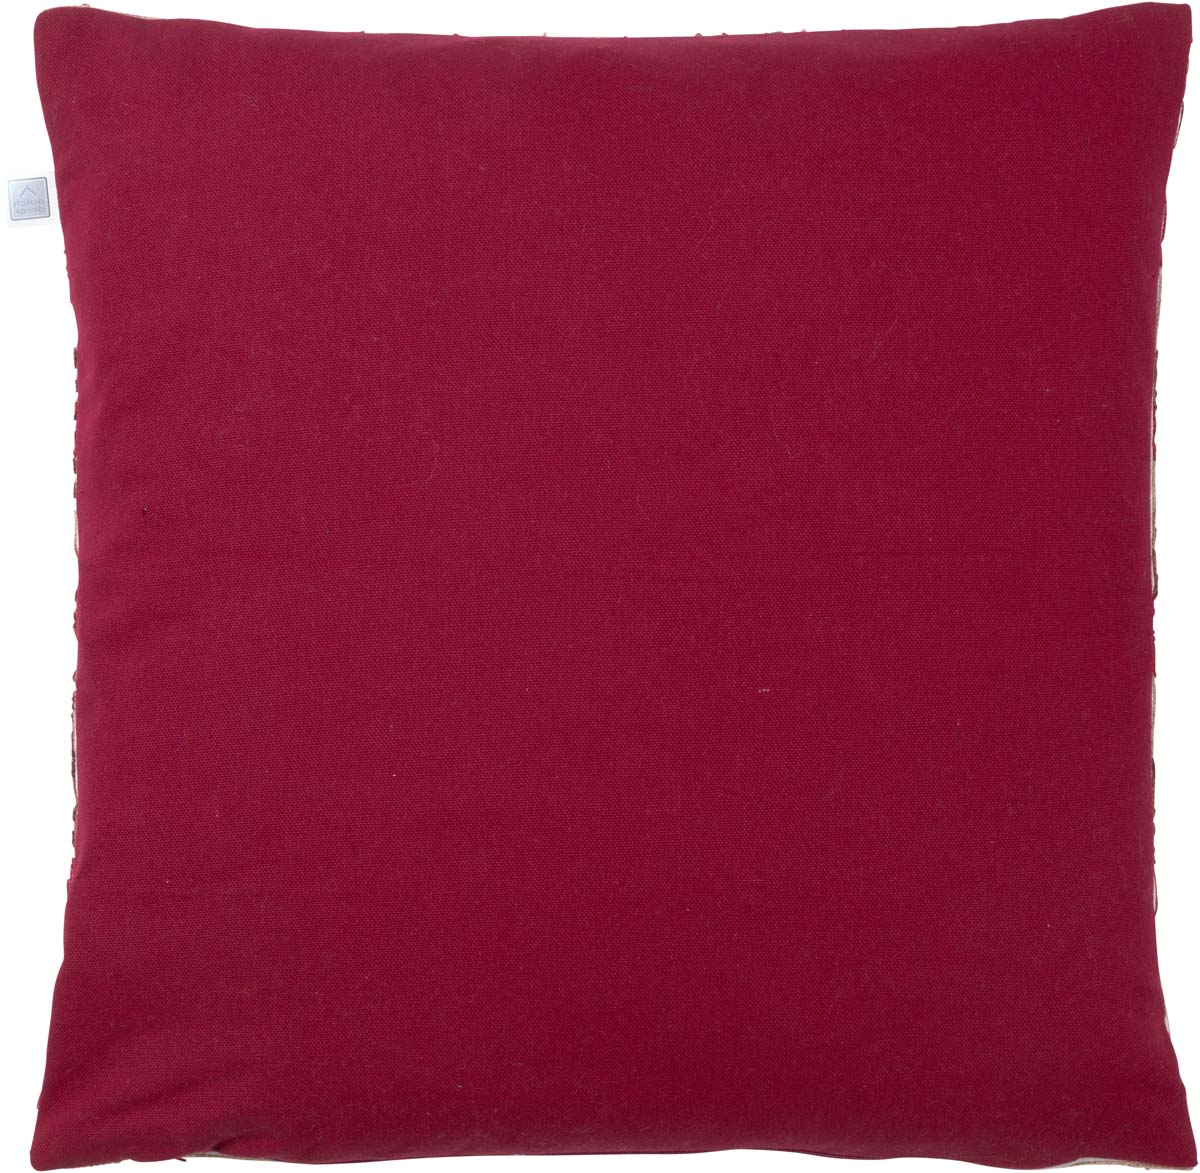 LUUK - Sierkussen 45x45 cm - bordeaux - rood - roze - streepjes - retro